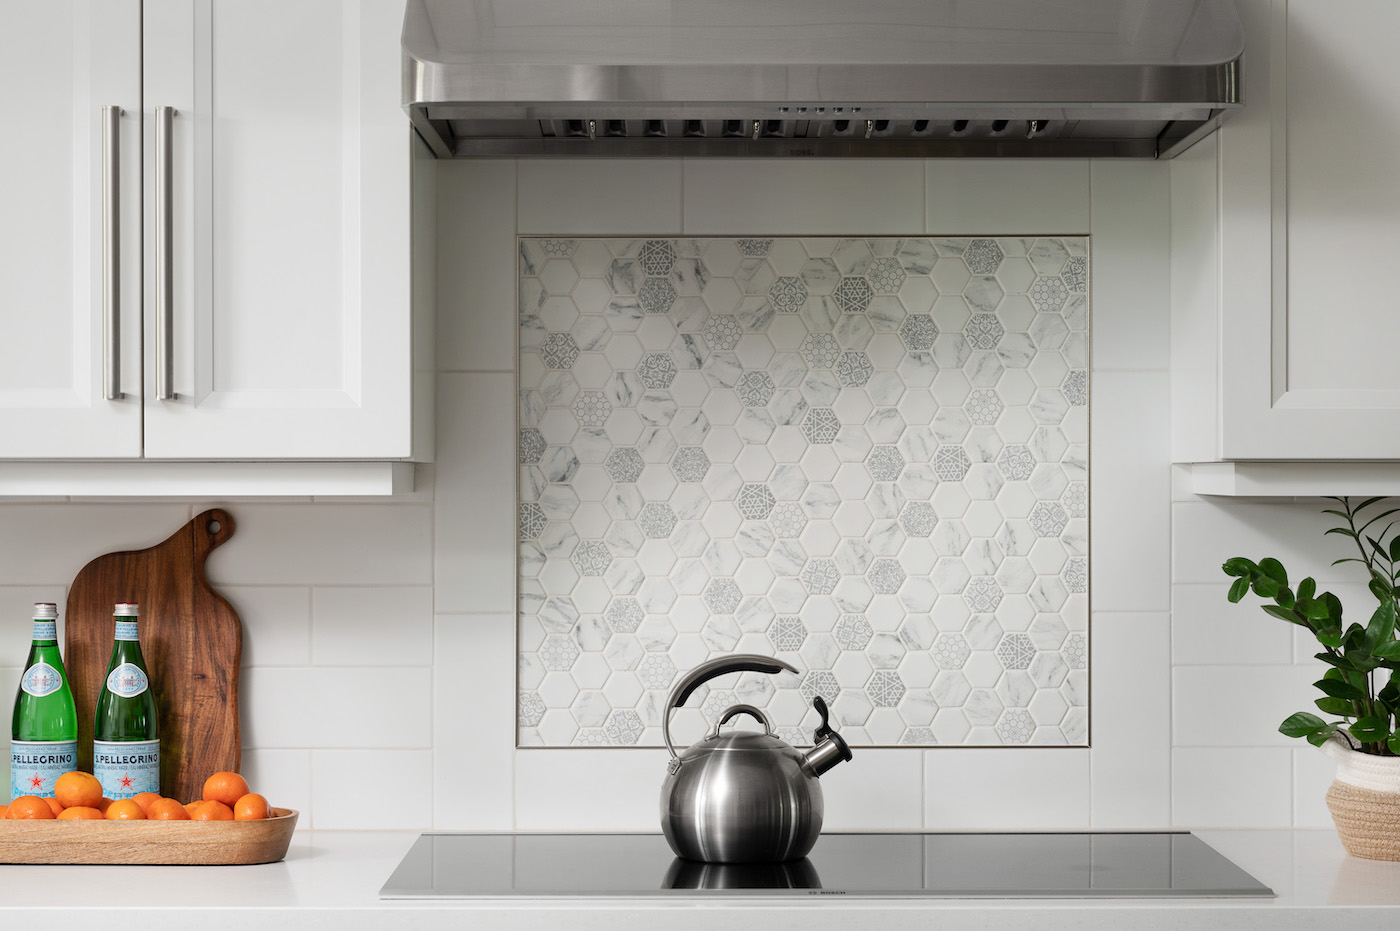 stove-backsplash-tile-detail-sheridan-interiors